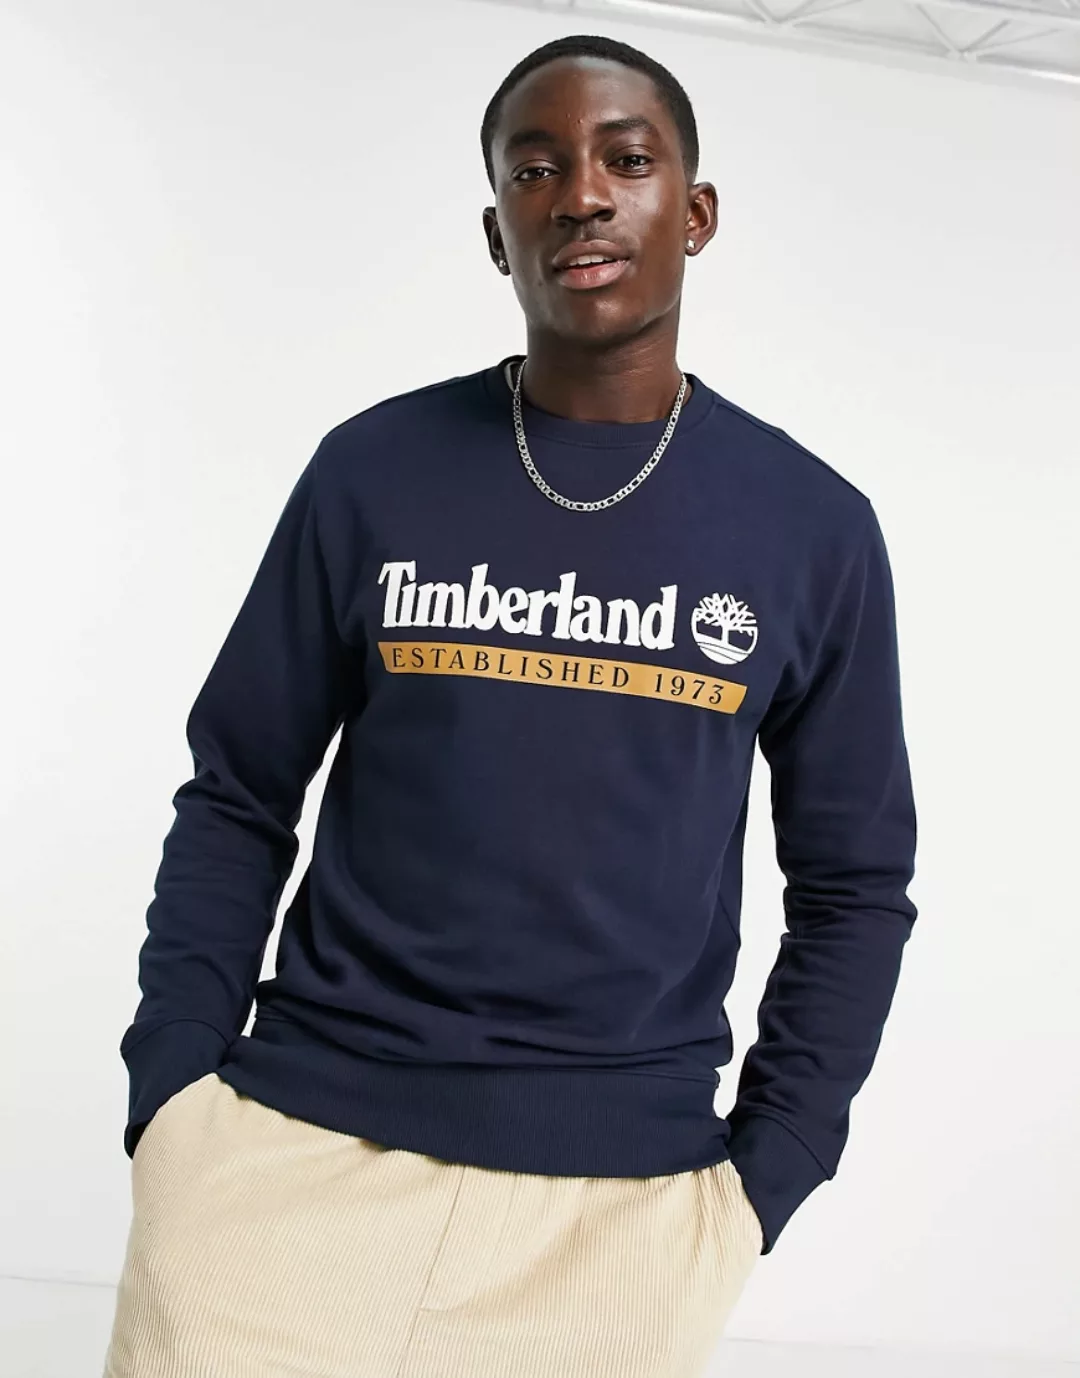 Timberland – Established 1973 – Sweatshirt in Dunkelblau günstig online kaufen